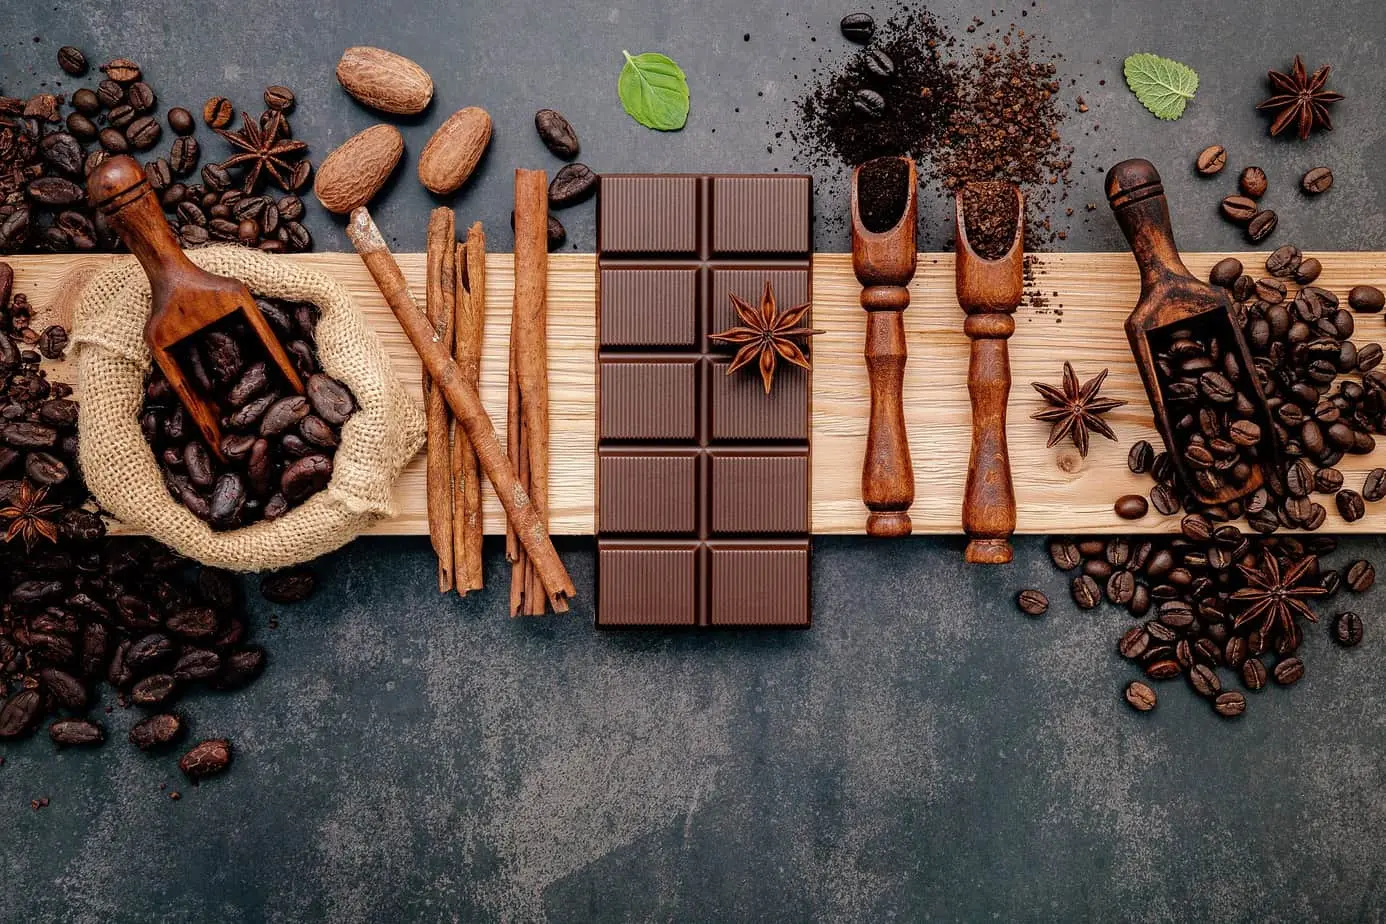 قطعة شوكولاتة وحبوب قهوة معروضة على لوح خشبي.